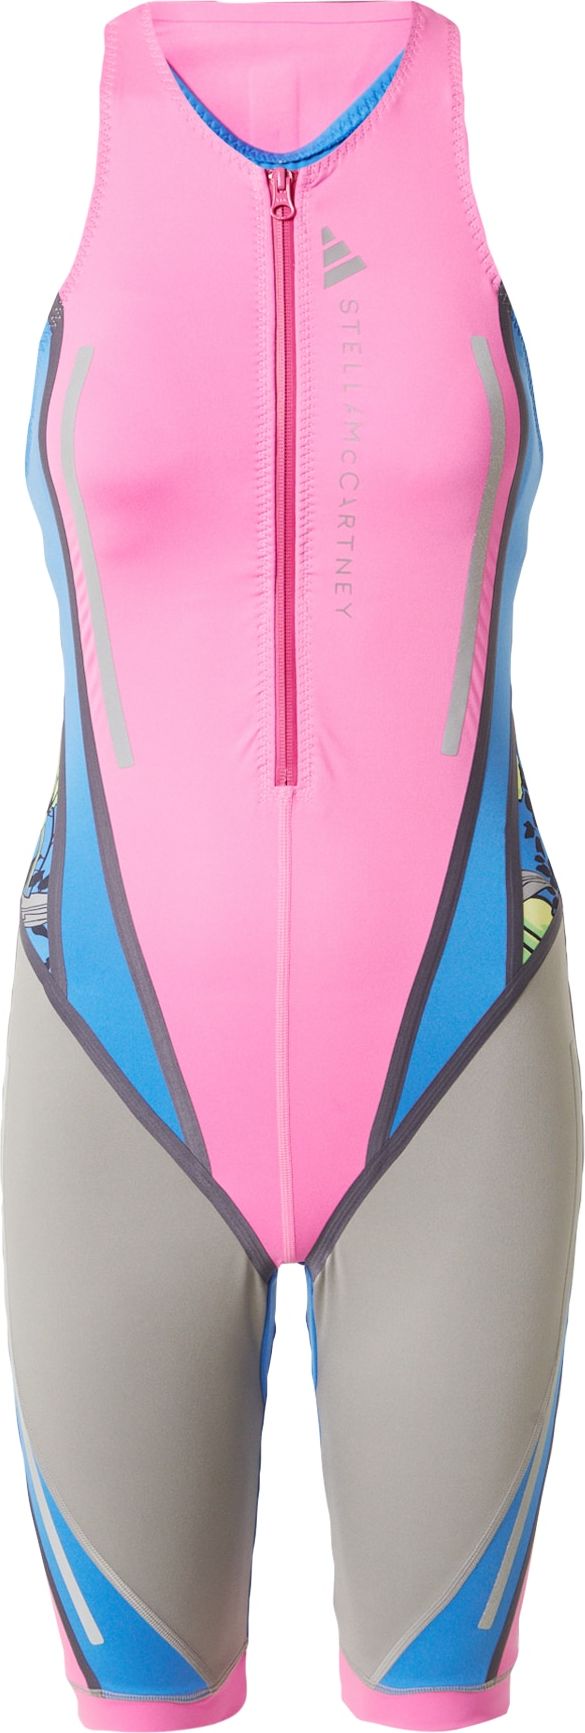 ADIDAS BY STELLA MCCARTNEY Sportovní plavky 'TrueNature' modrá / stříbrně šedá / světle zelená / pink